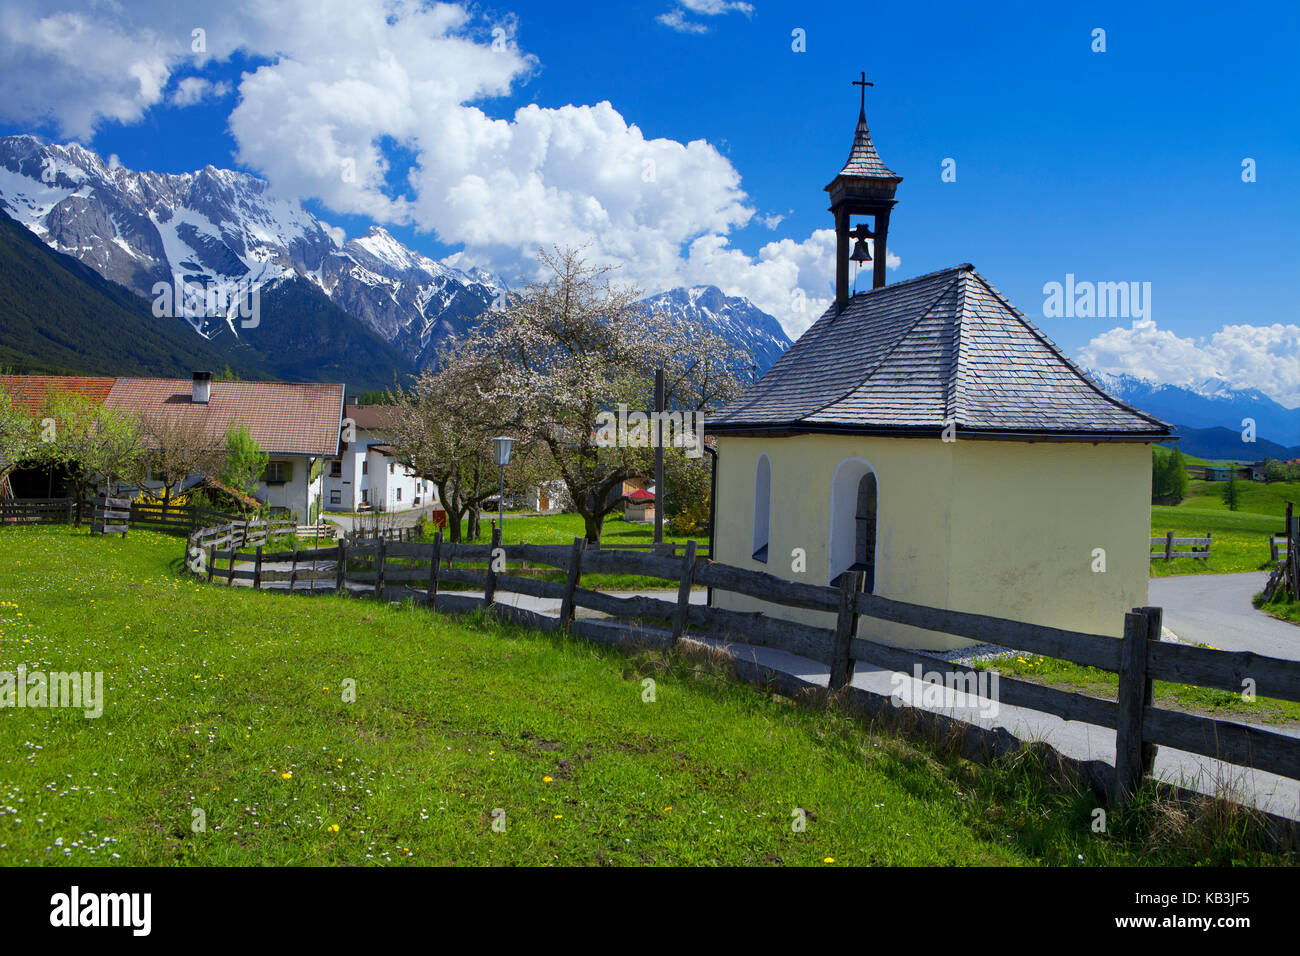 Austria, Tyrol, Obsteig, Stock Photo